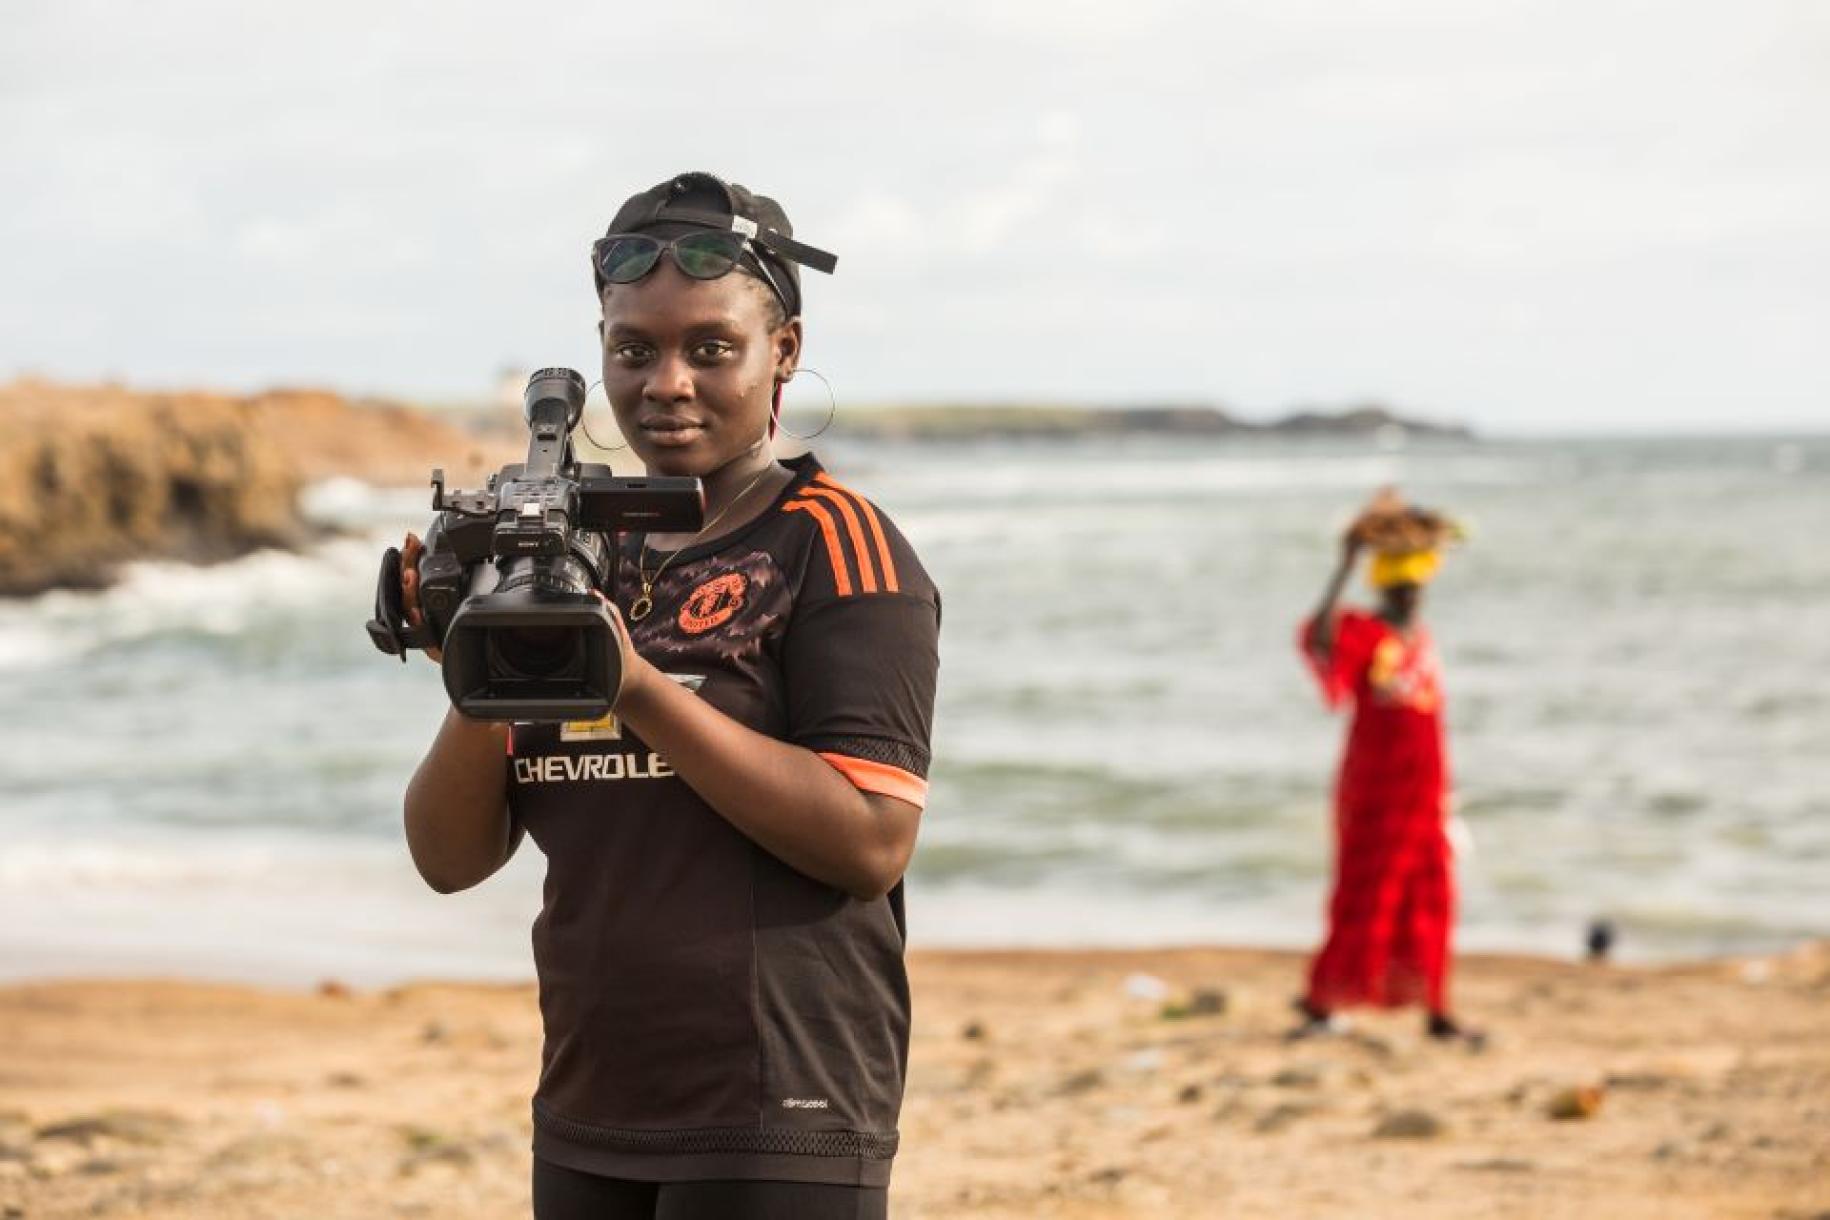 أومو كلثوم ديوب، 18 عامًا، تقف لالتقاط صورة بكاميرا الفيديو الخاصة بها على الشاطئ في داكار.